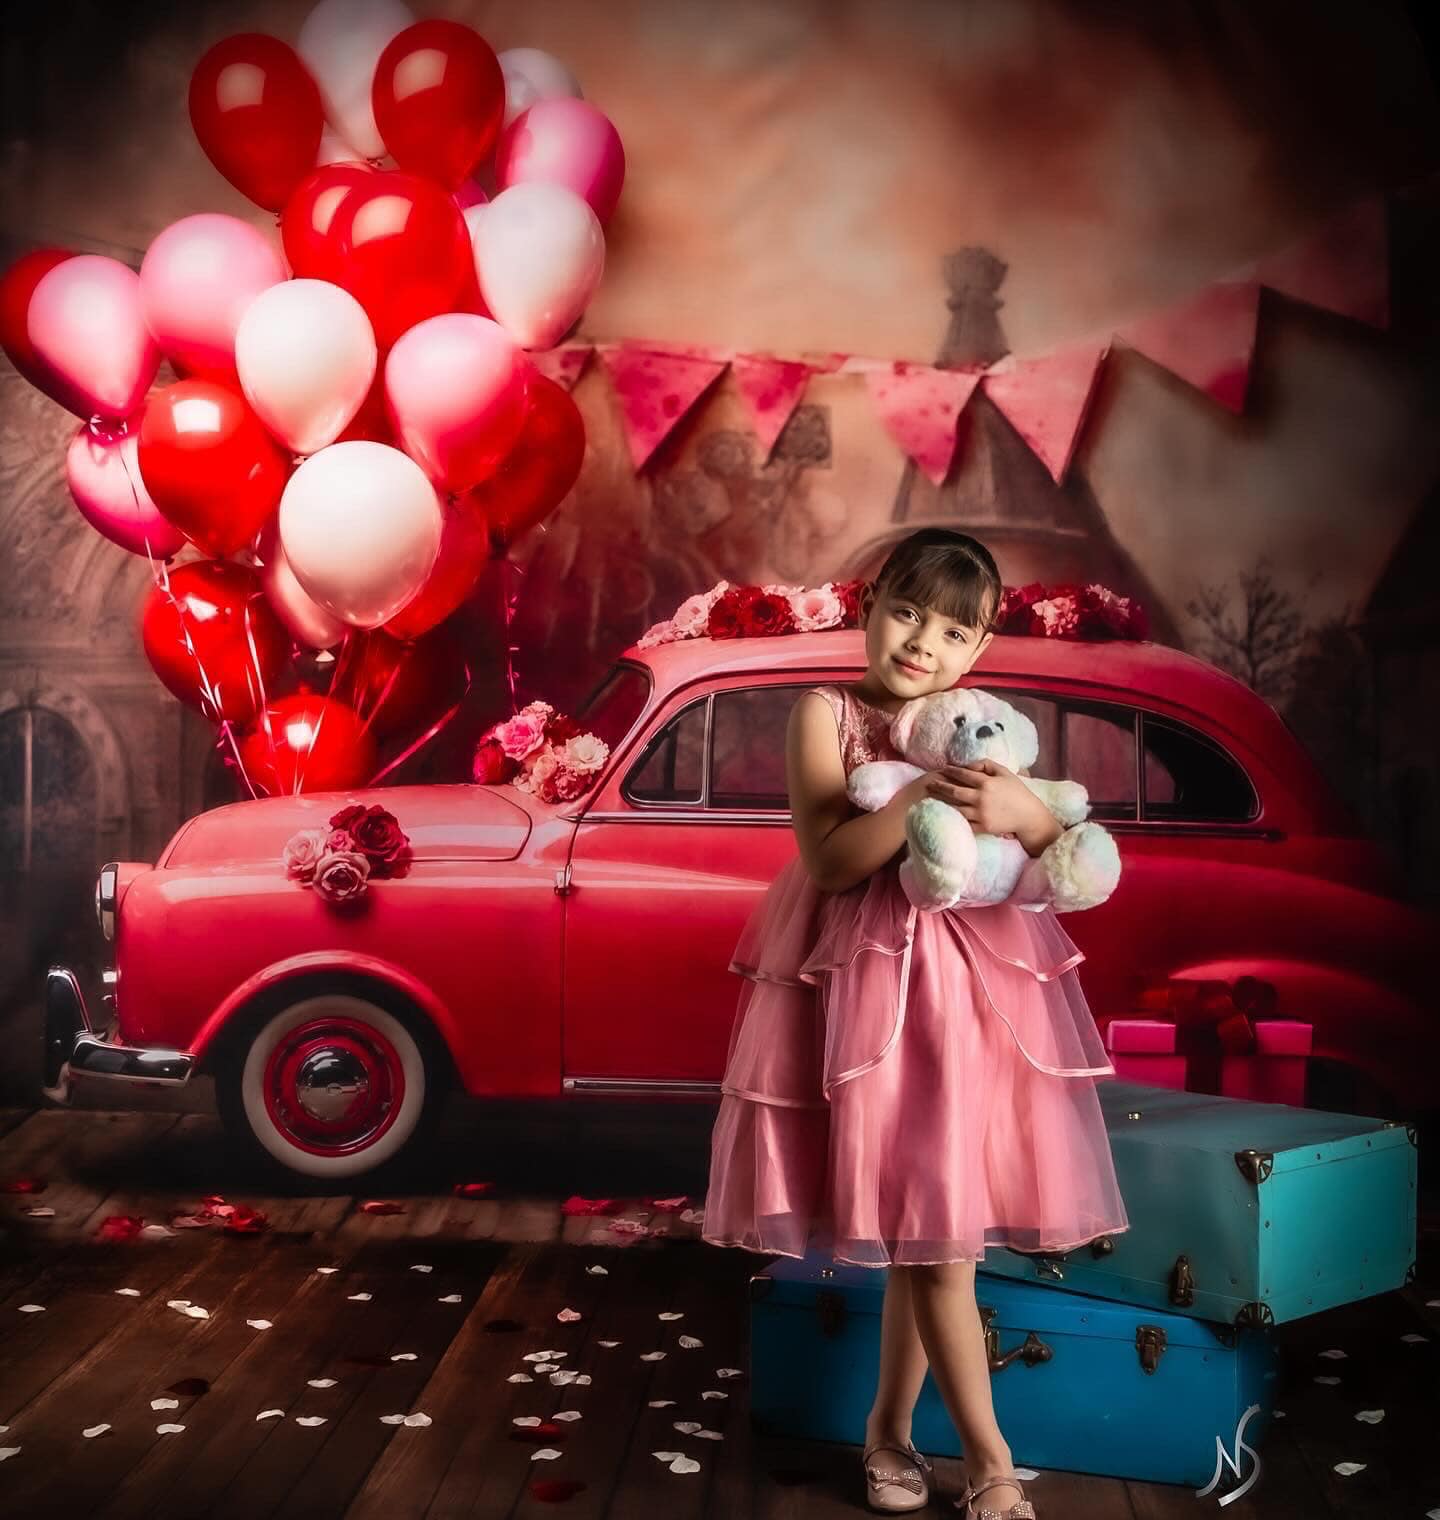 Kate Saint Valentin Voiture rouge Ballons Toile de fond conçue par Emetselch